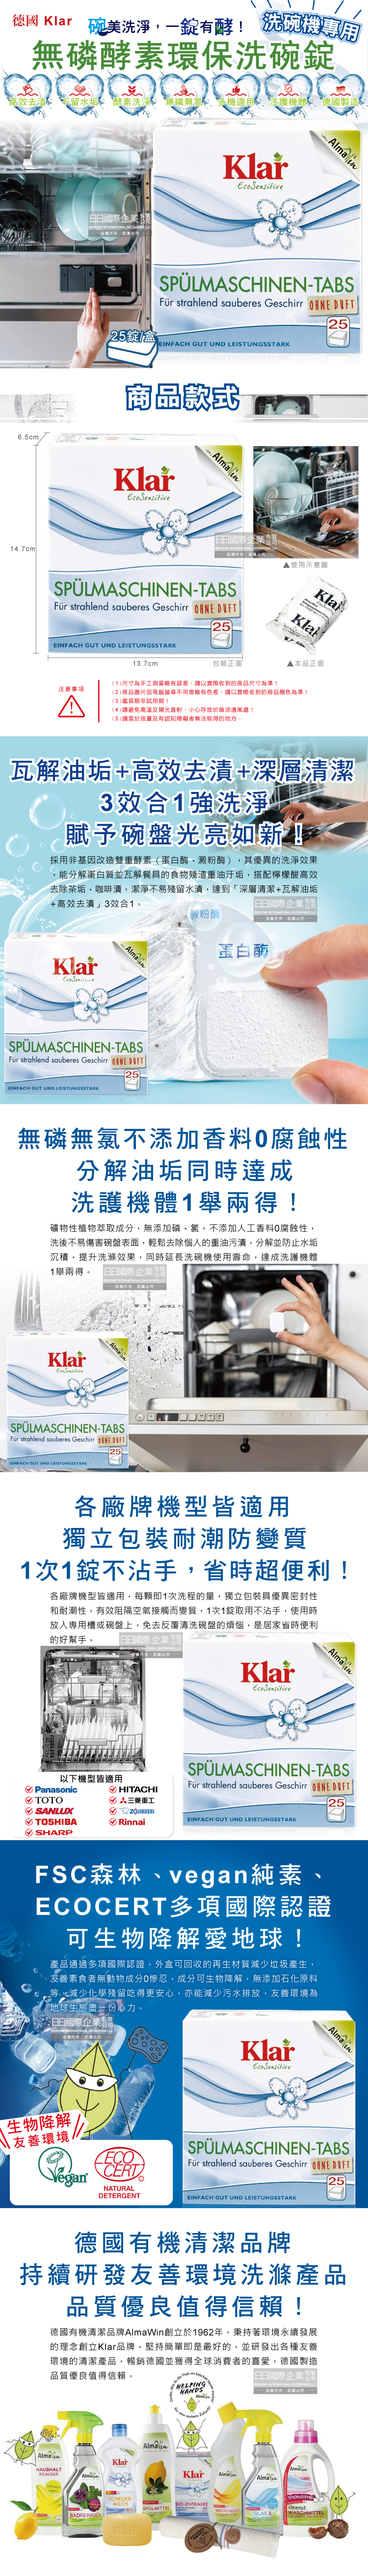 (清潔-碗盤)德國Klar-無磷酵素洗碗機專用環保洗碗錠25錠盒裝介紹圖